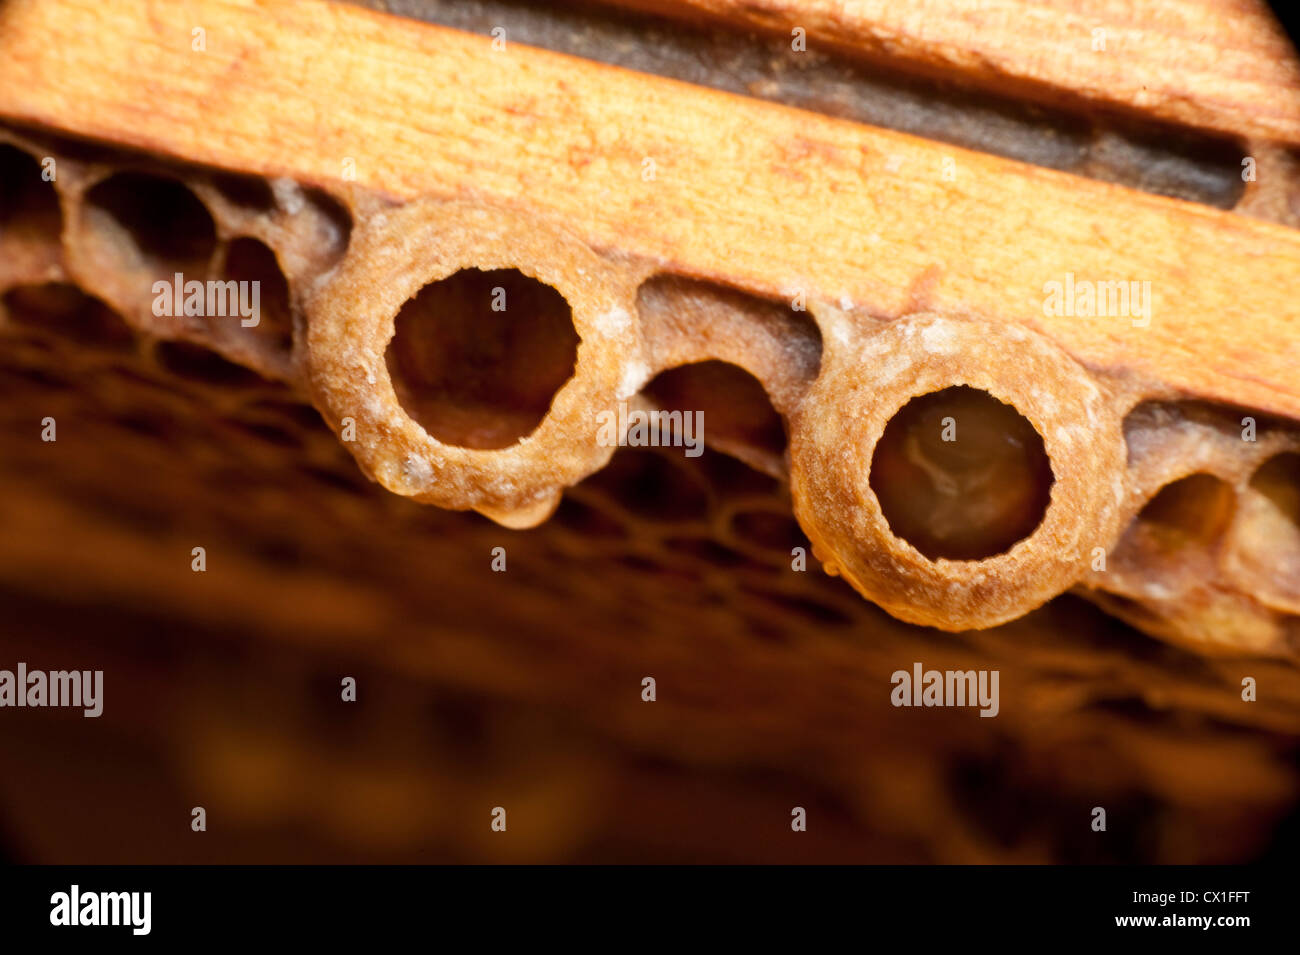 Honig Biene Apis Mellifera Kent UK Weiselzelle auf Waben Bienenstock wachsenden Biene im Larvenstadium Stockfoto